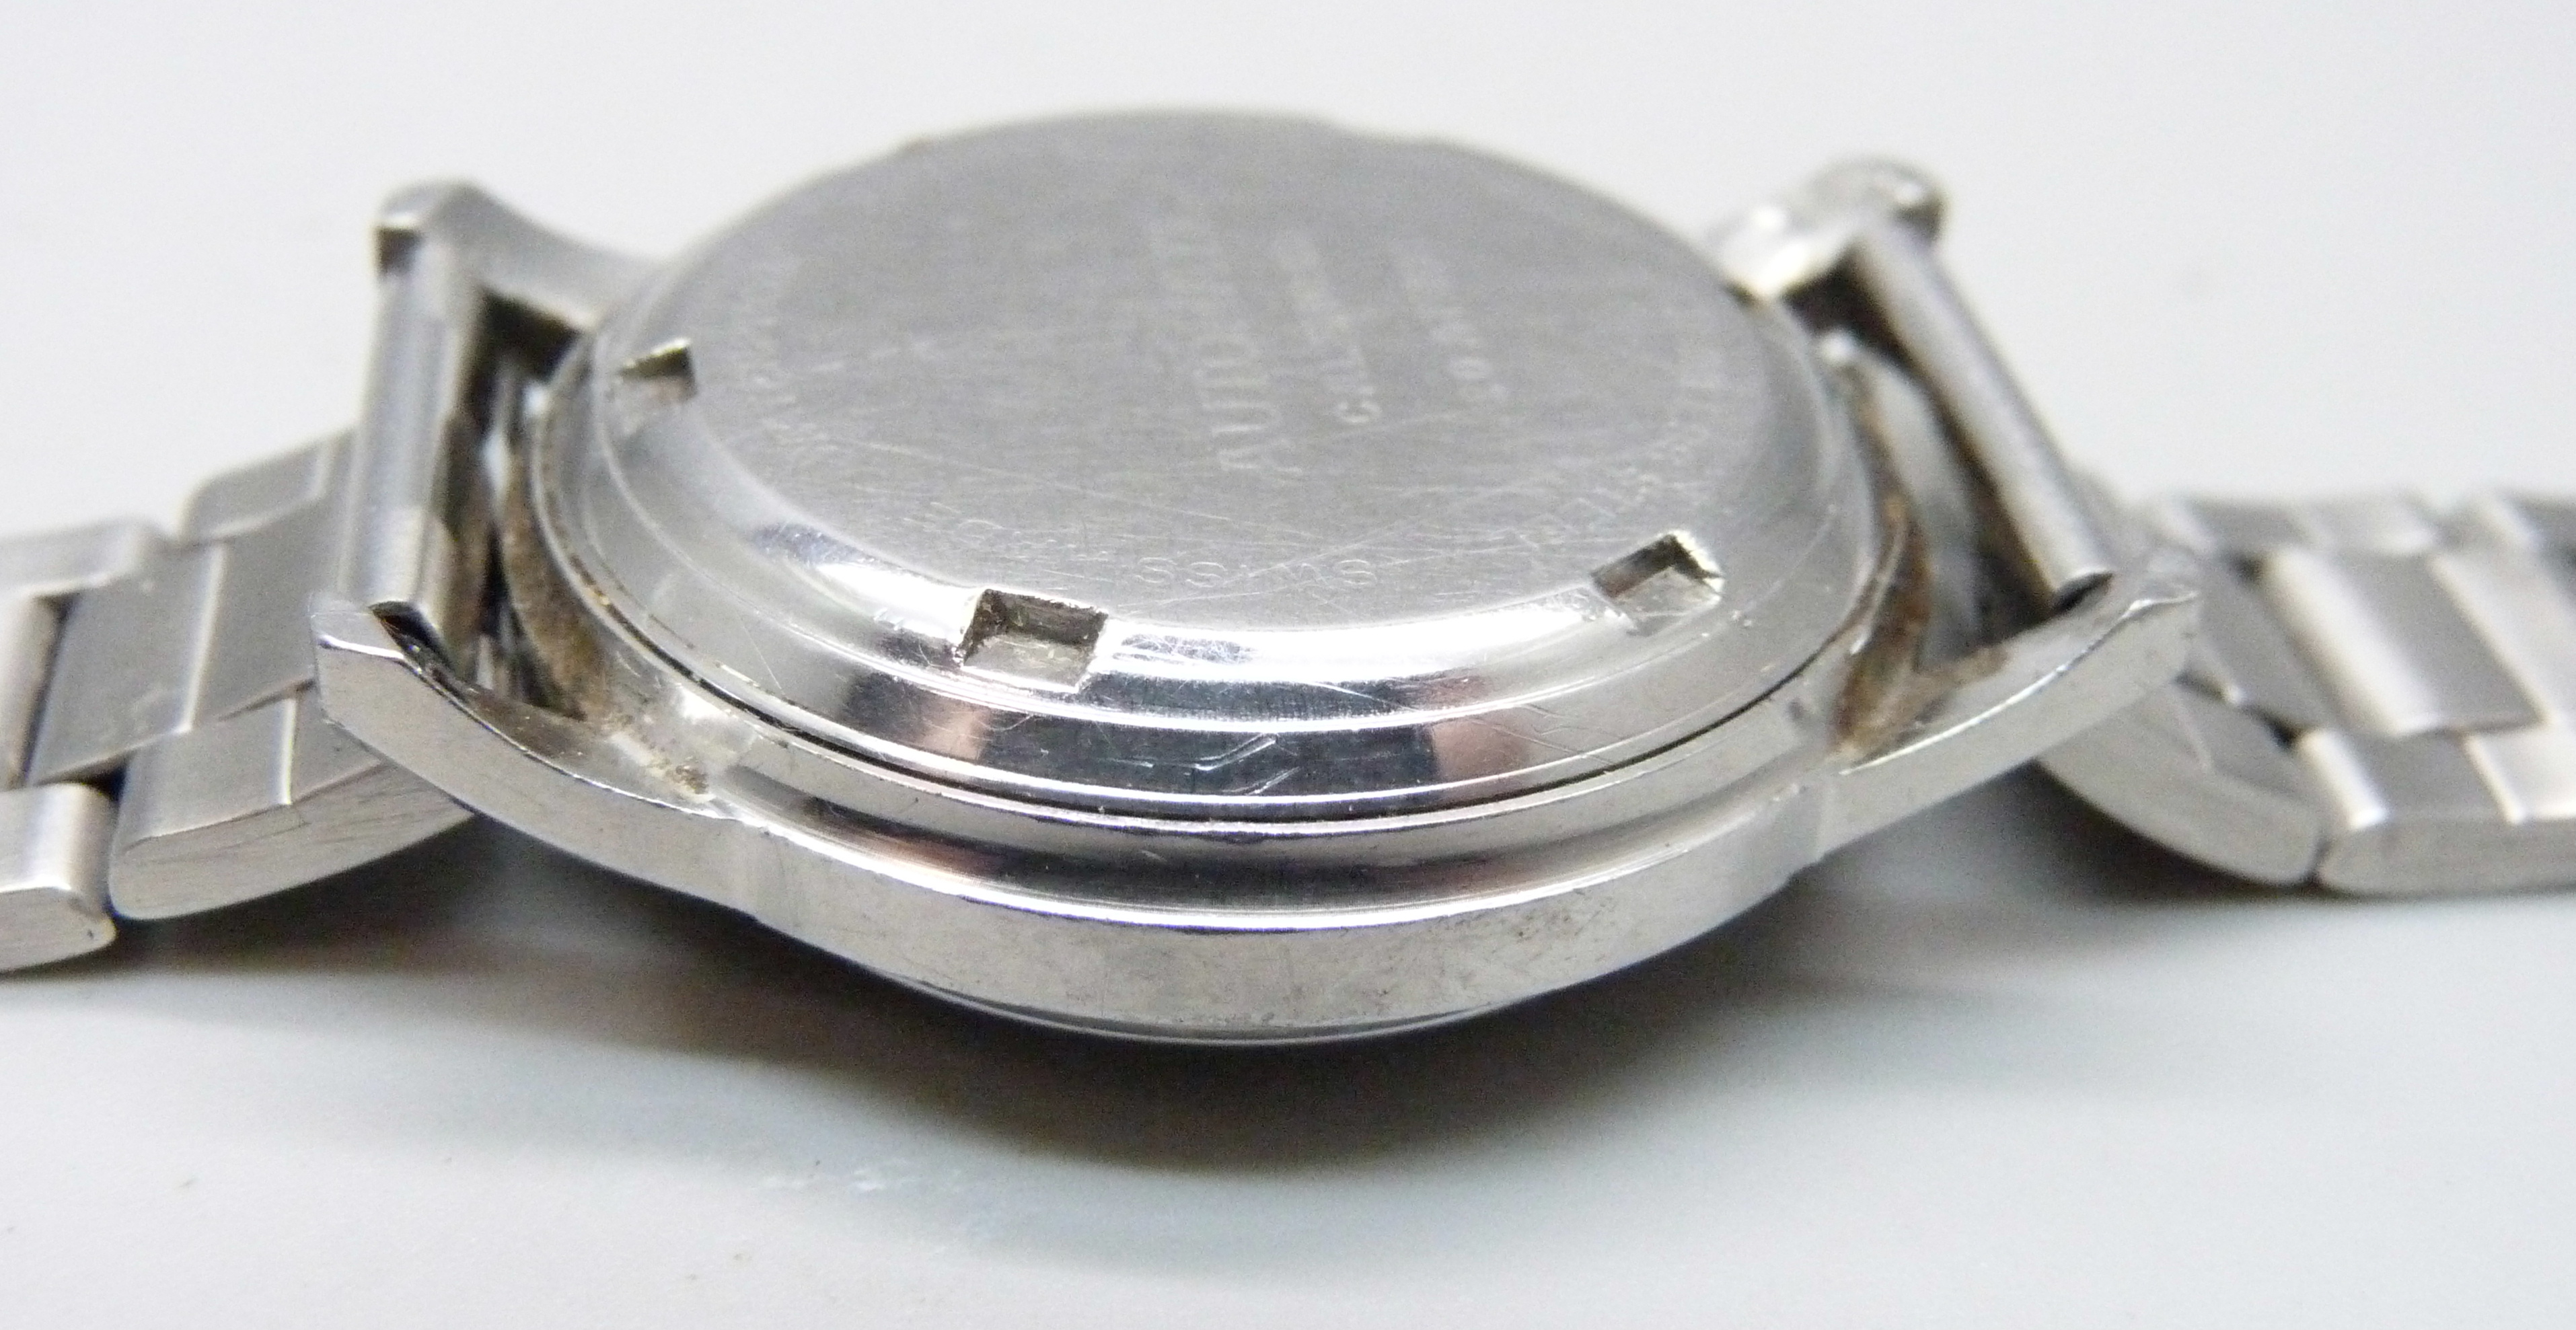 An Oriosa Superautomatic wristwatch - Image 4 of 5